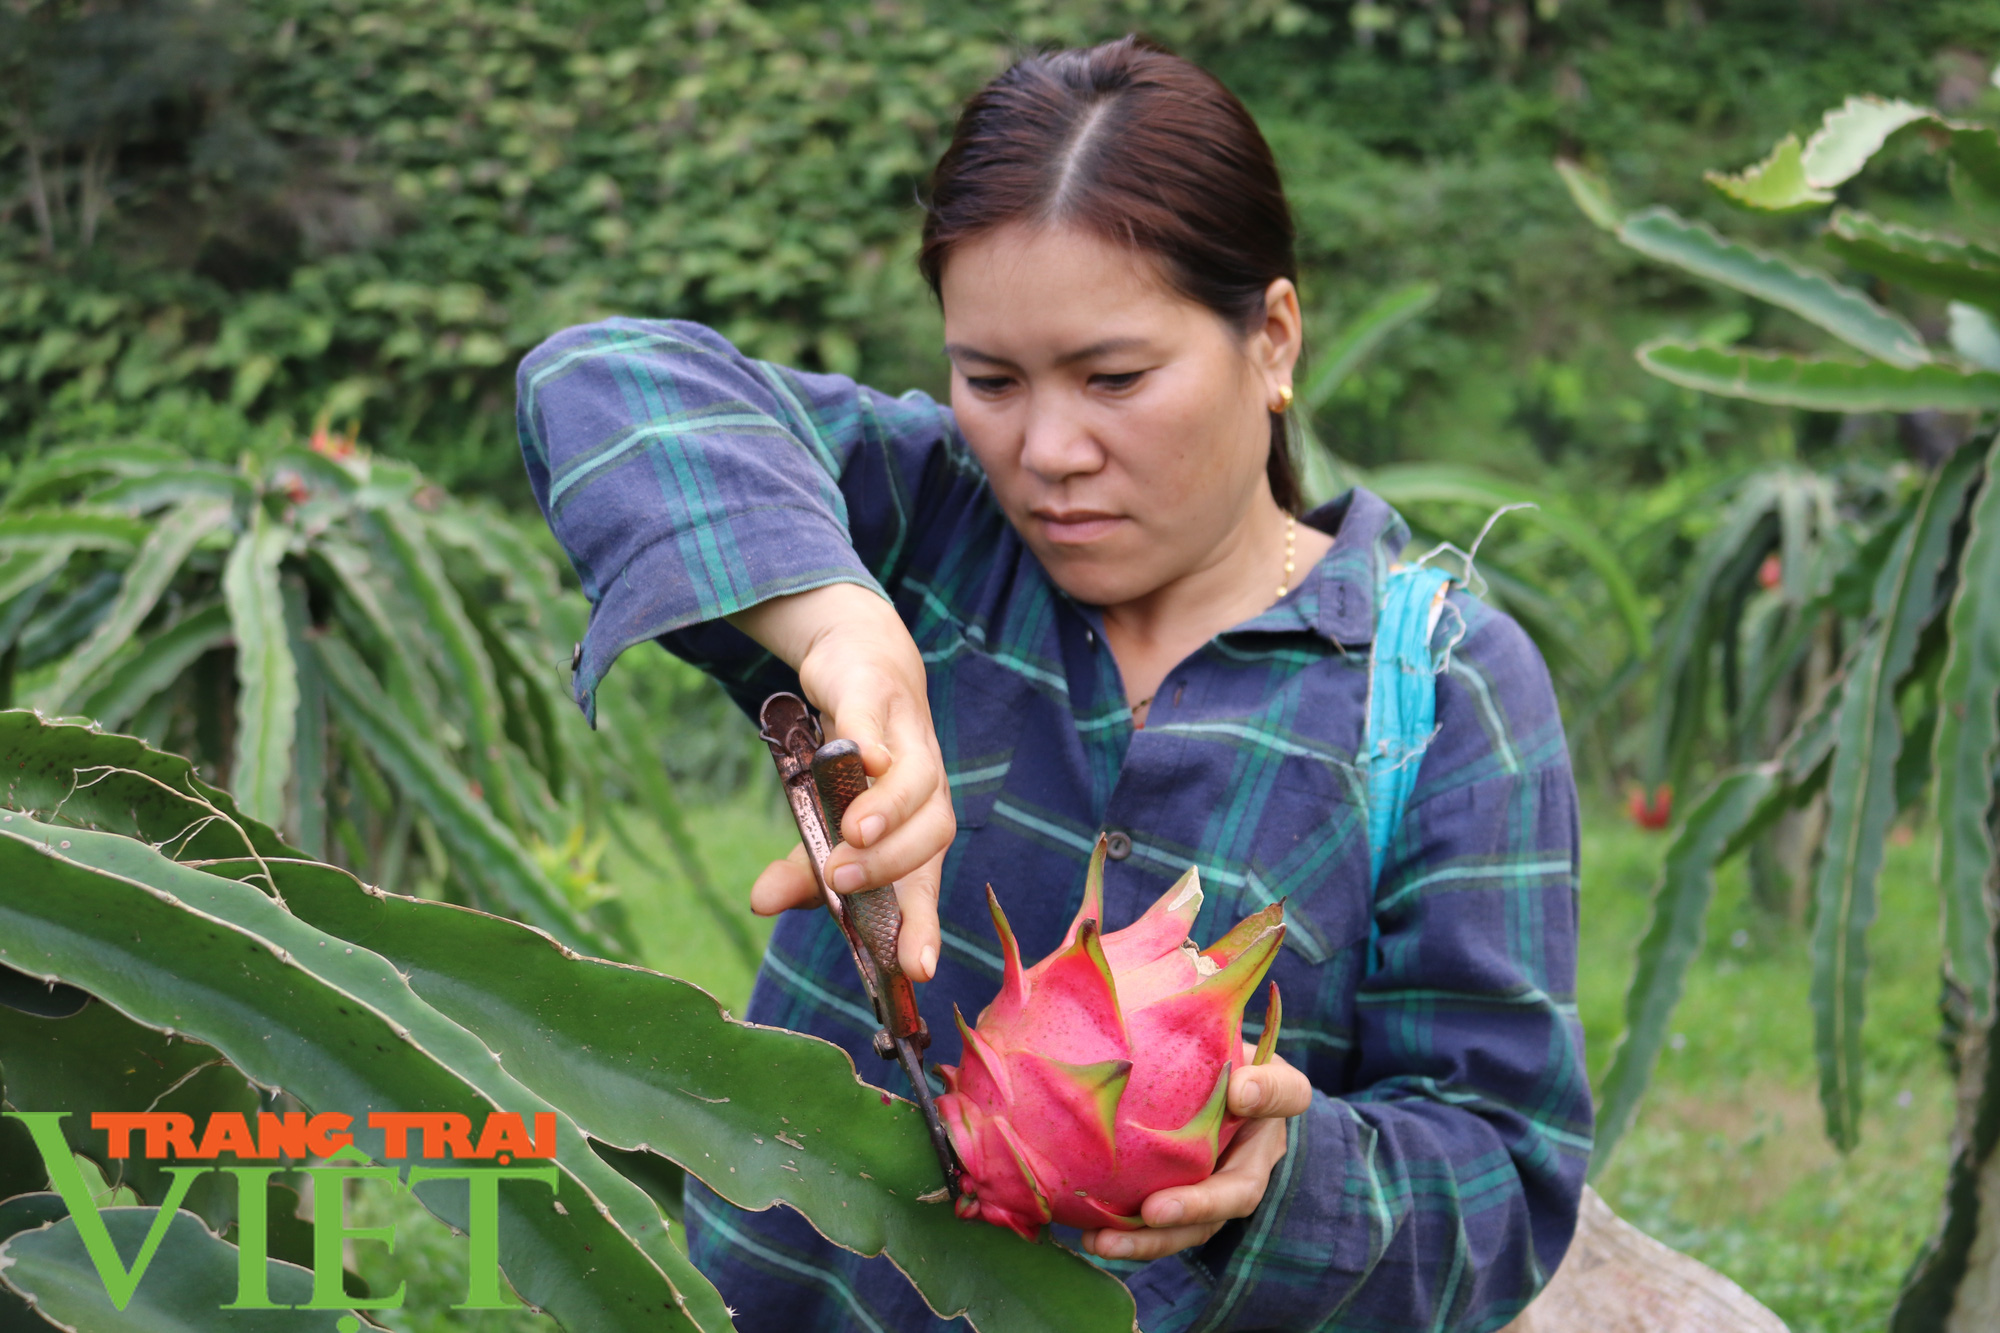 Nông dân Thuận Châu làm trụ trên nương để có thu nhập hơn trồng ngô lúa - Ảnh 1.